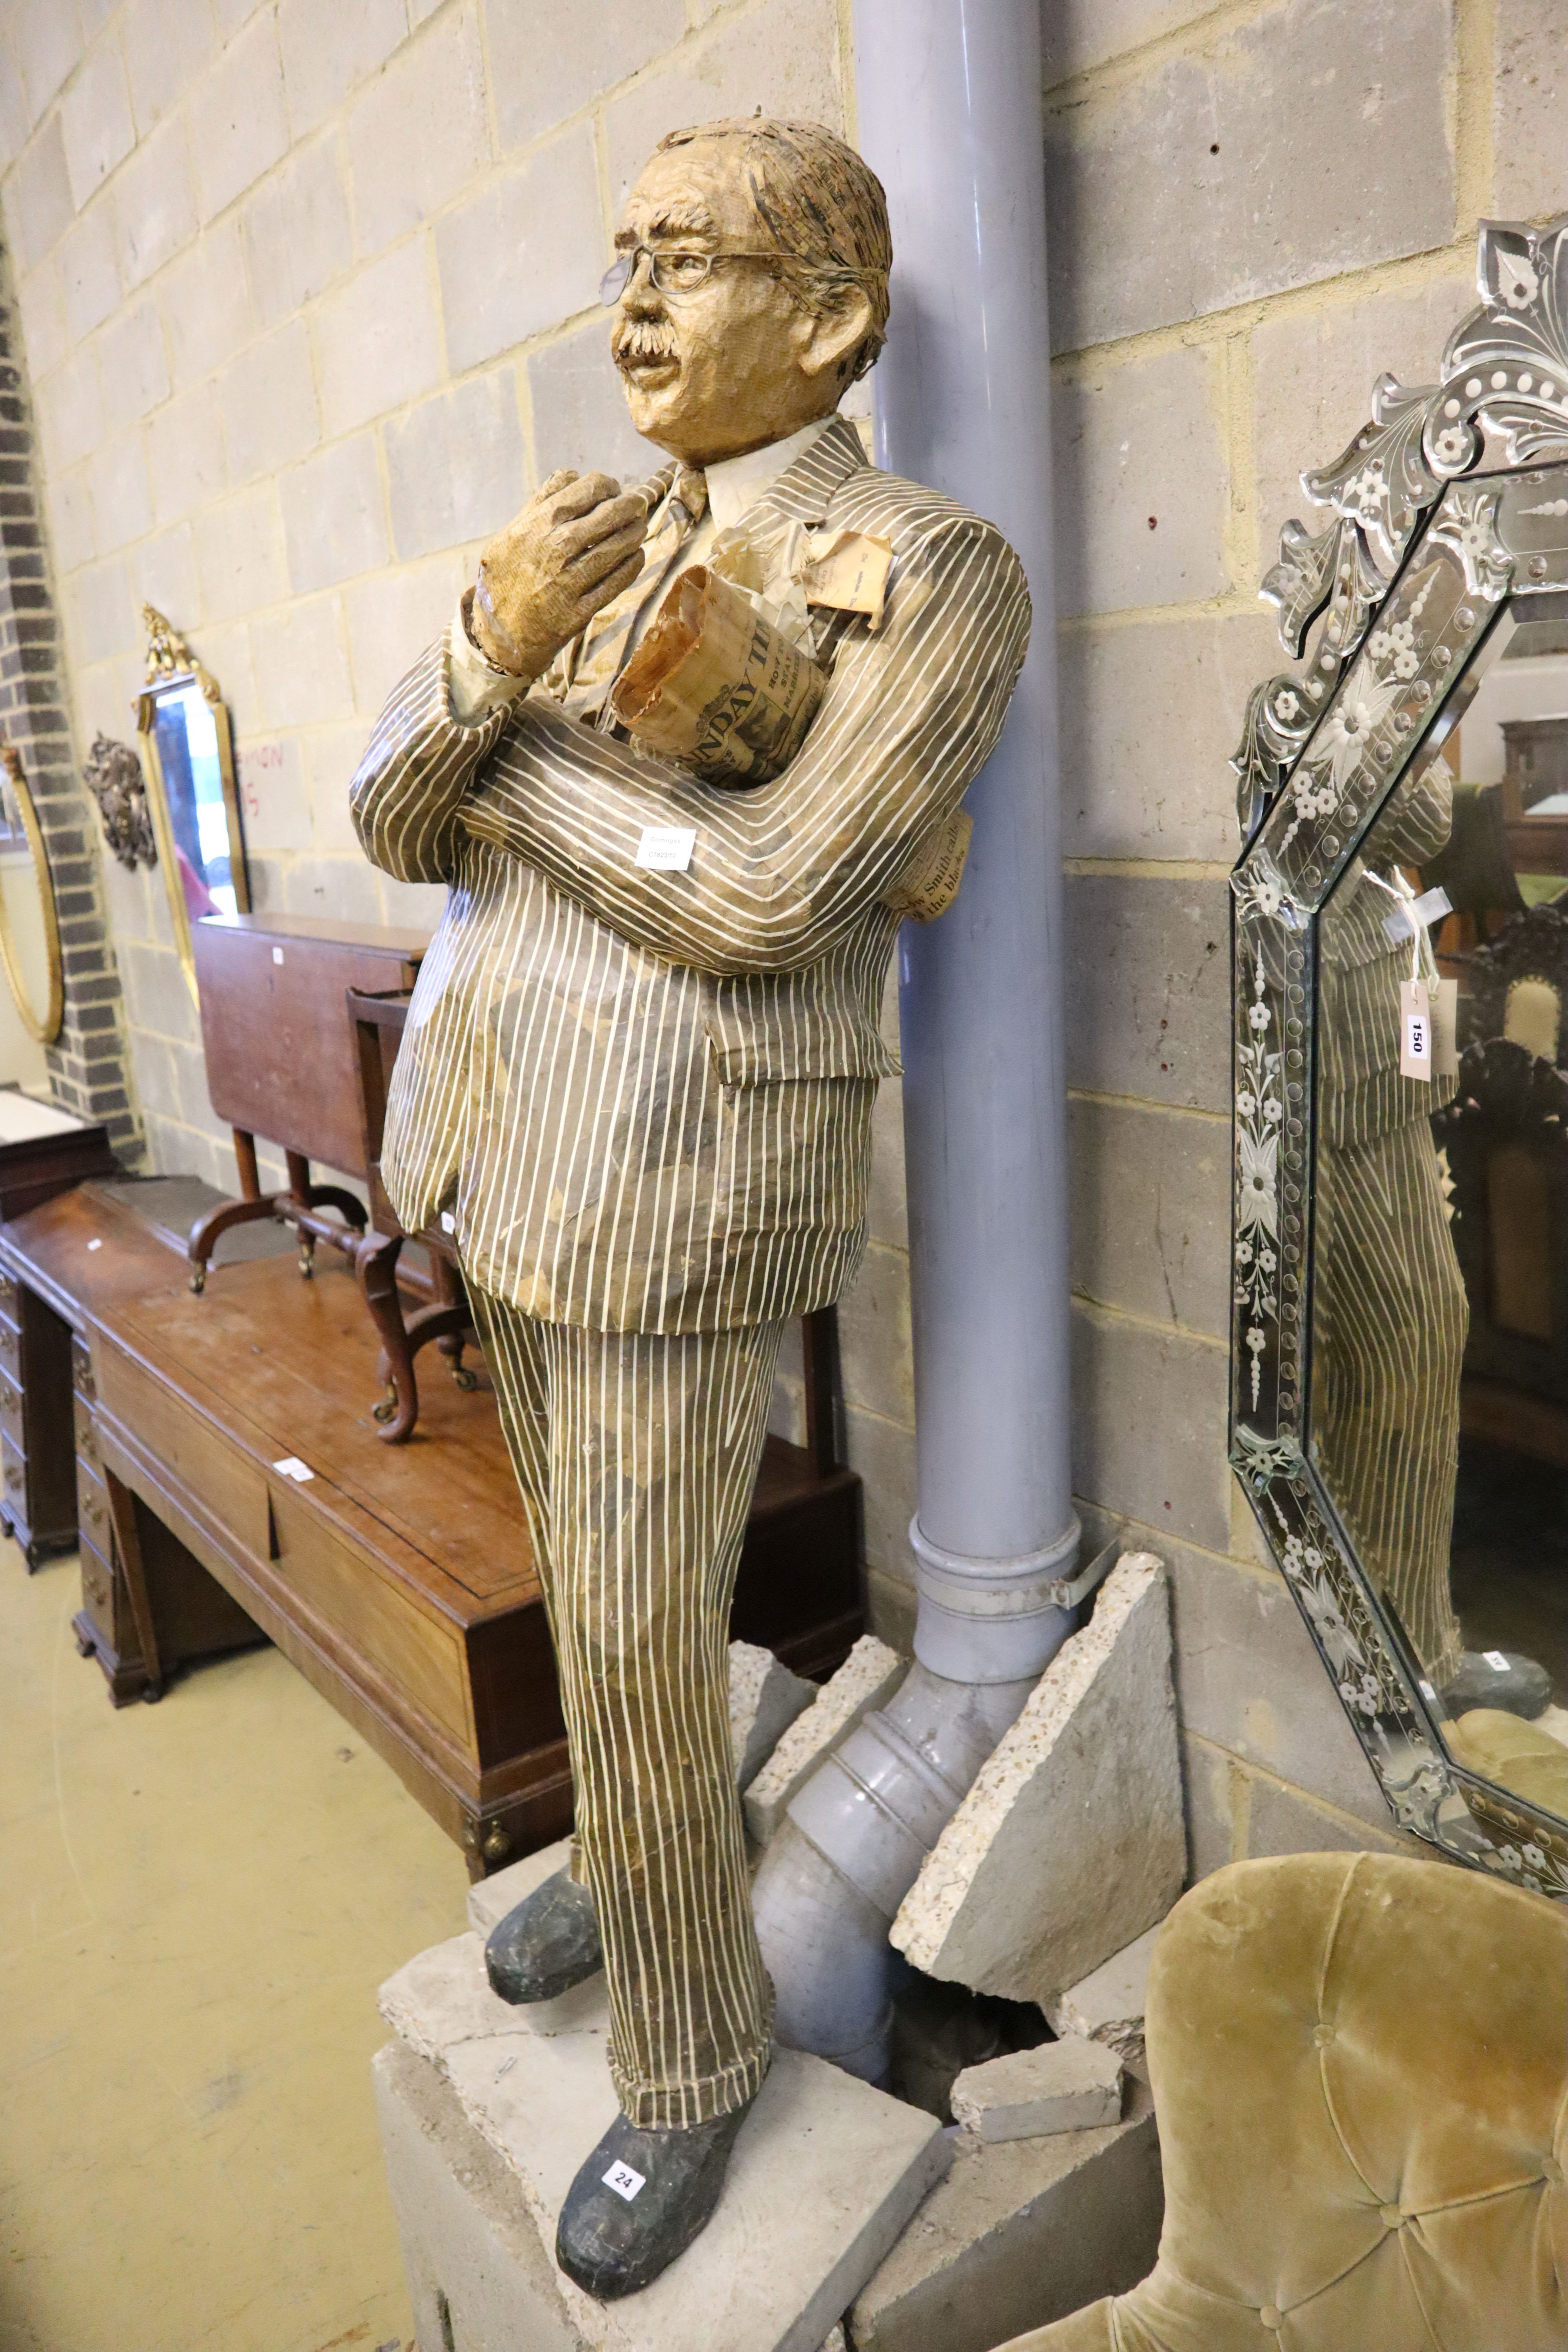 A stuffed papier mache figure of a gentleman holding the Sunday Times, height 170cm